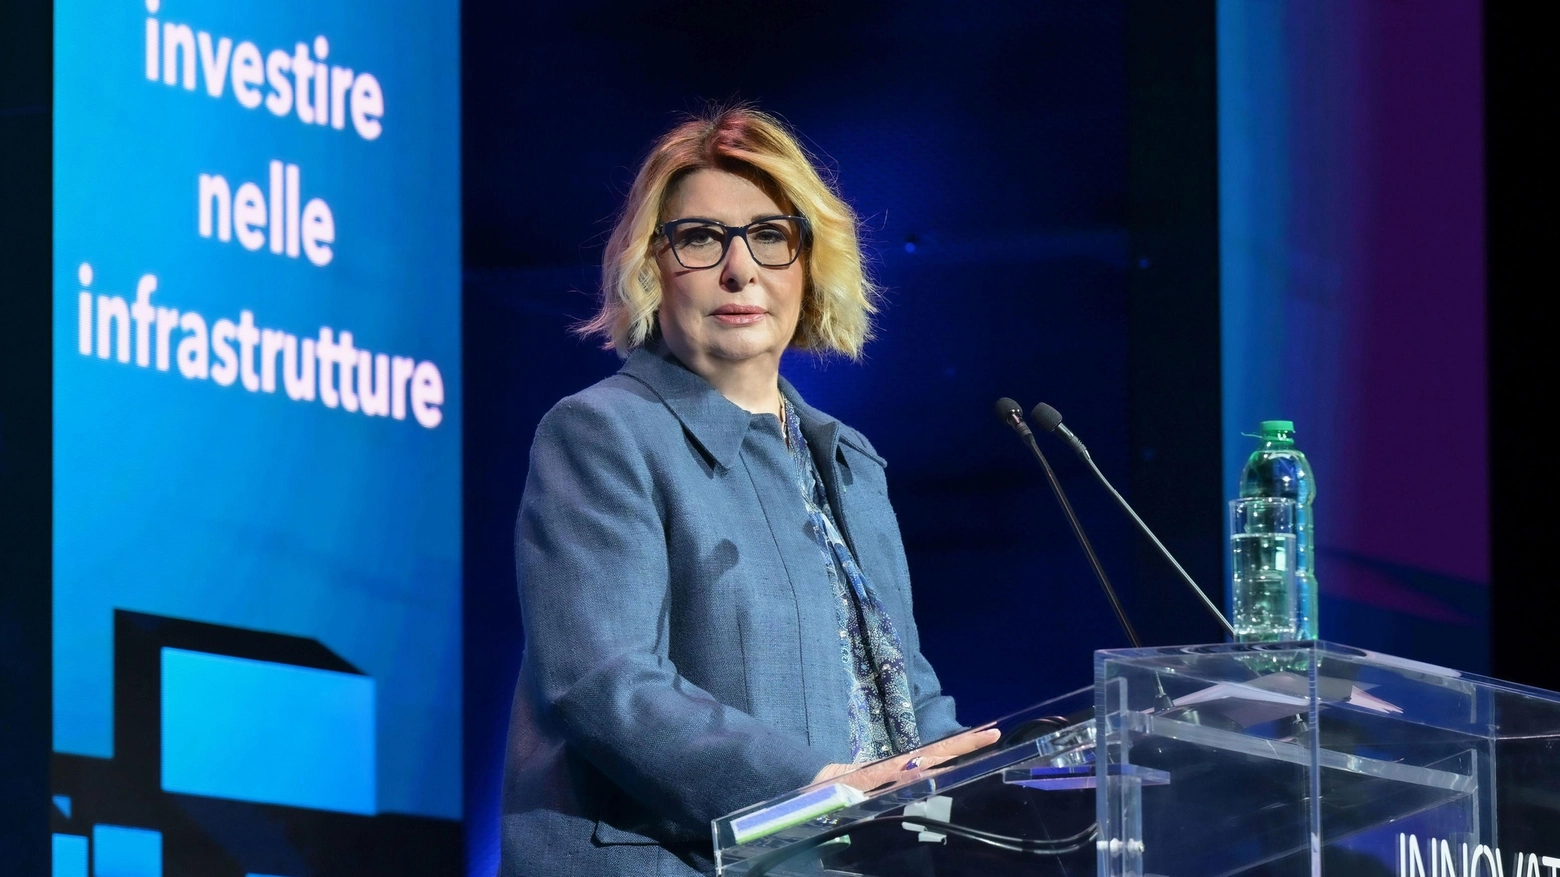 La presidente di Ania, Maria Bianca Farina: "L’innovazione digitale garantisce soluzioni efficaci e performanti"